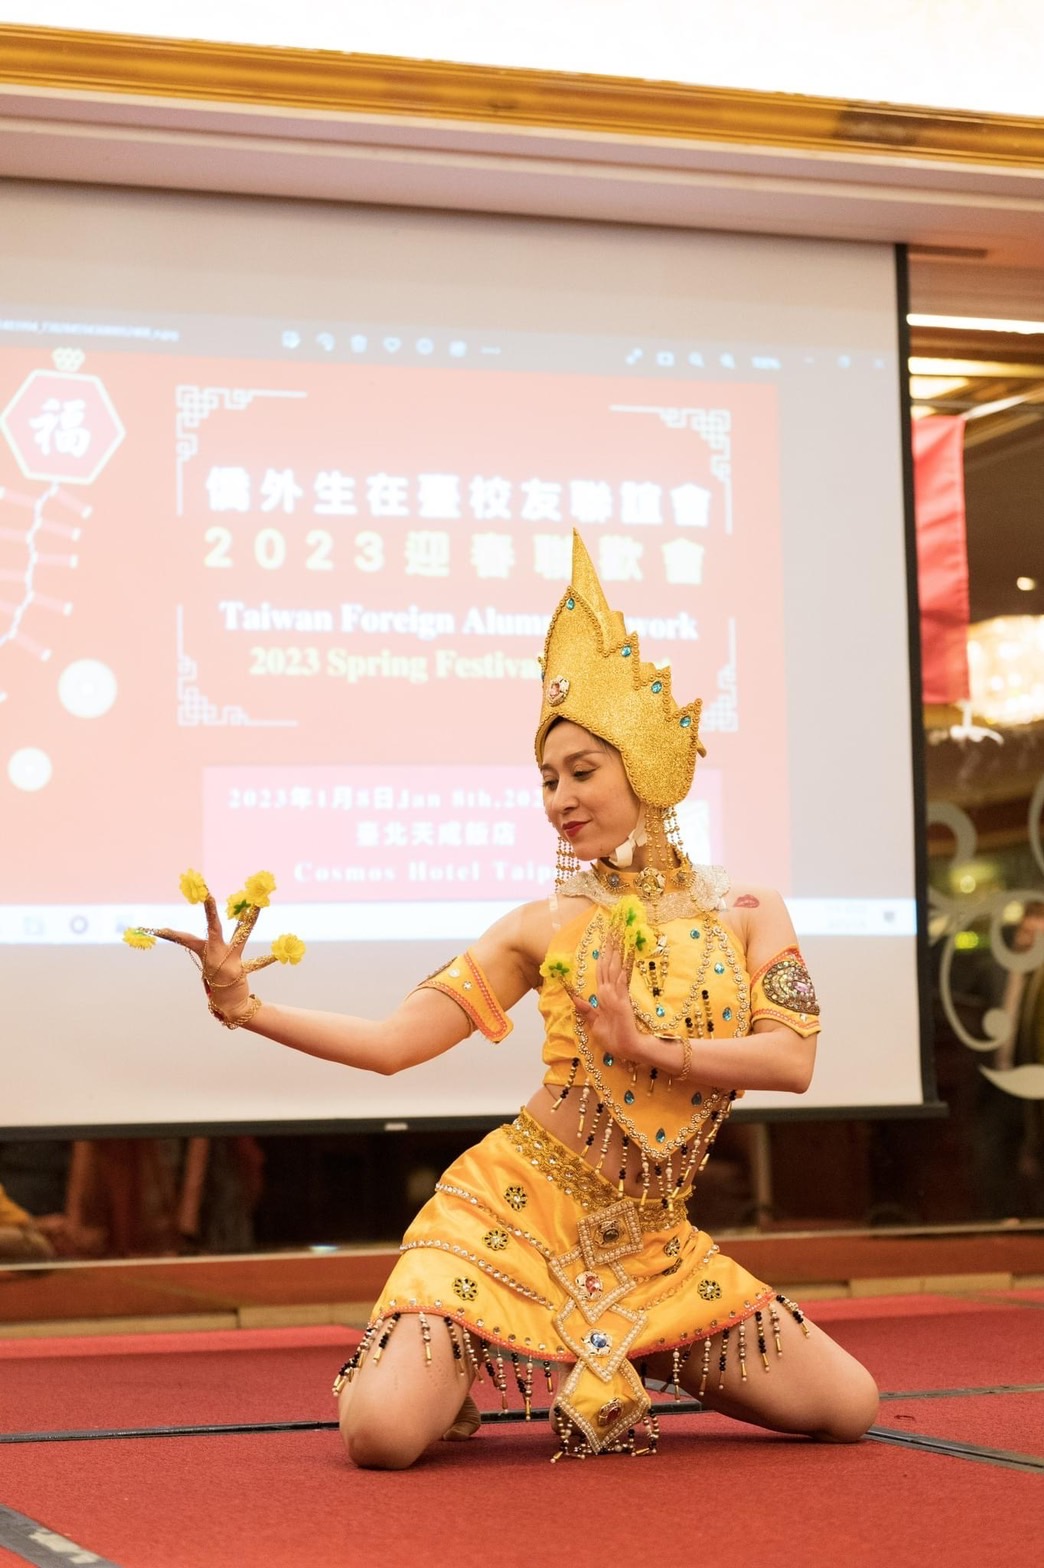 來 自 越 南 校 友 組 成 的 「 春 燕 」 舞 蹈 團 ， 提 供 我 們 精 彩 的 民 族 舞 蹈 表 演 ！ 